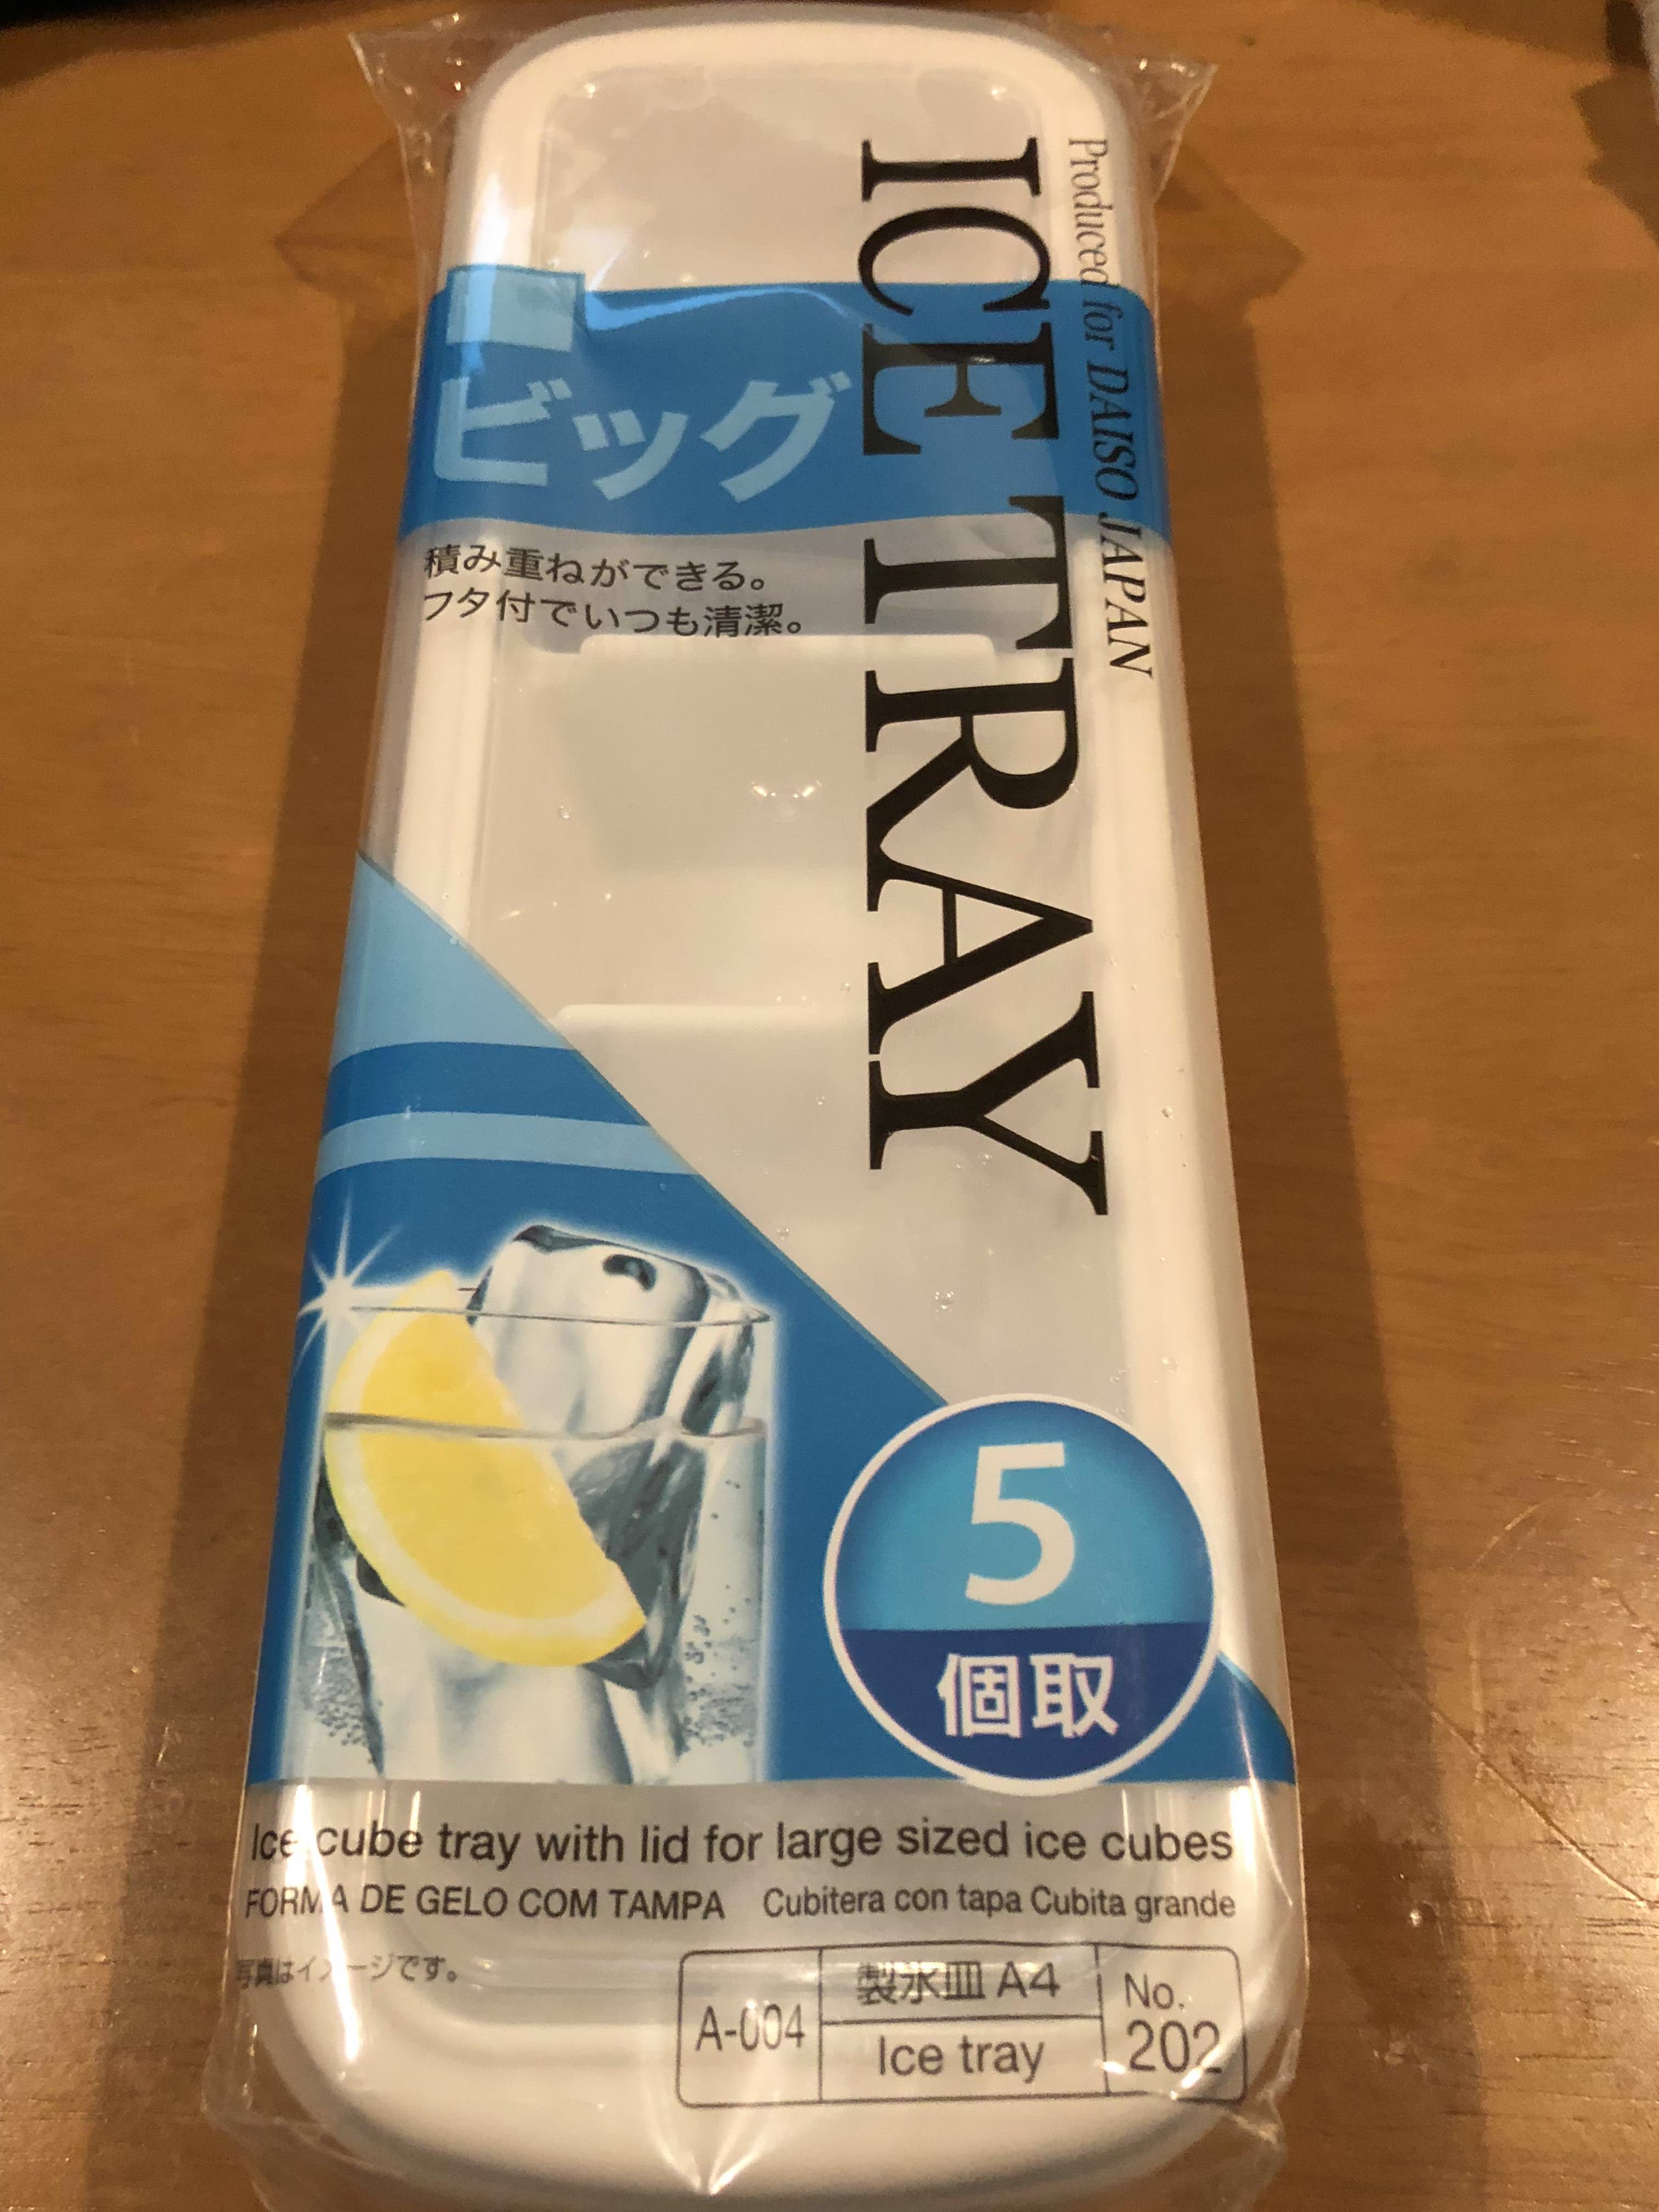 DAISO ビッグ ICE TRAY 5個取 (製氷皿A4 No. 202)